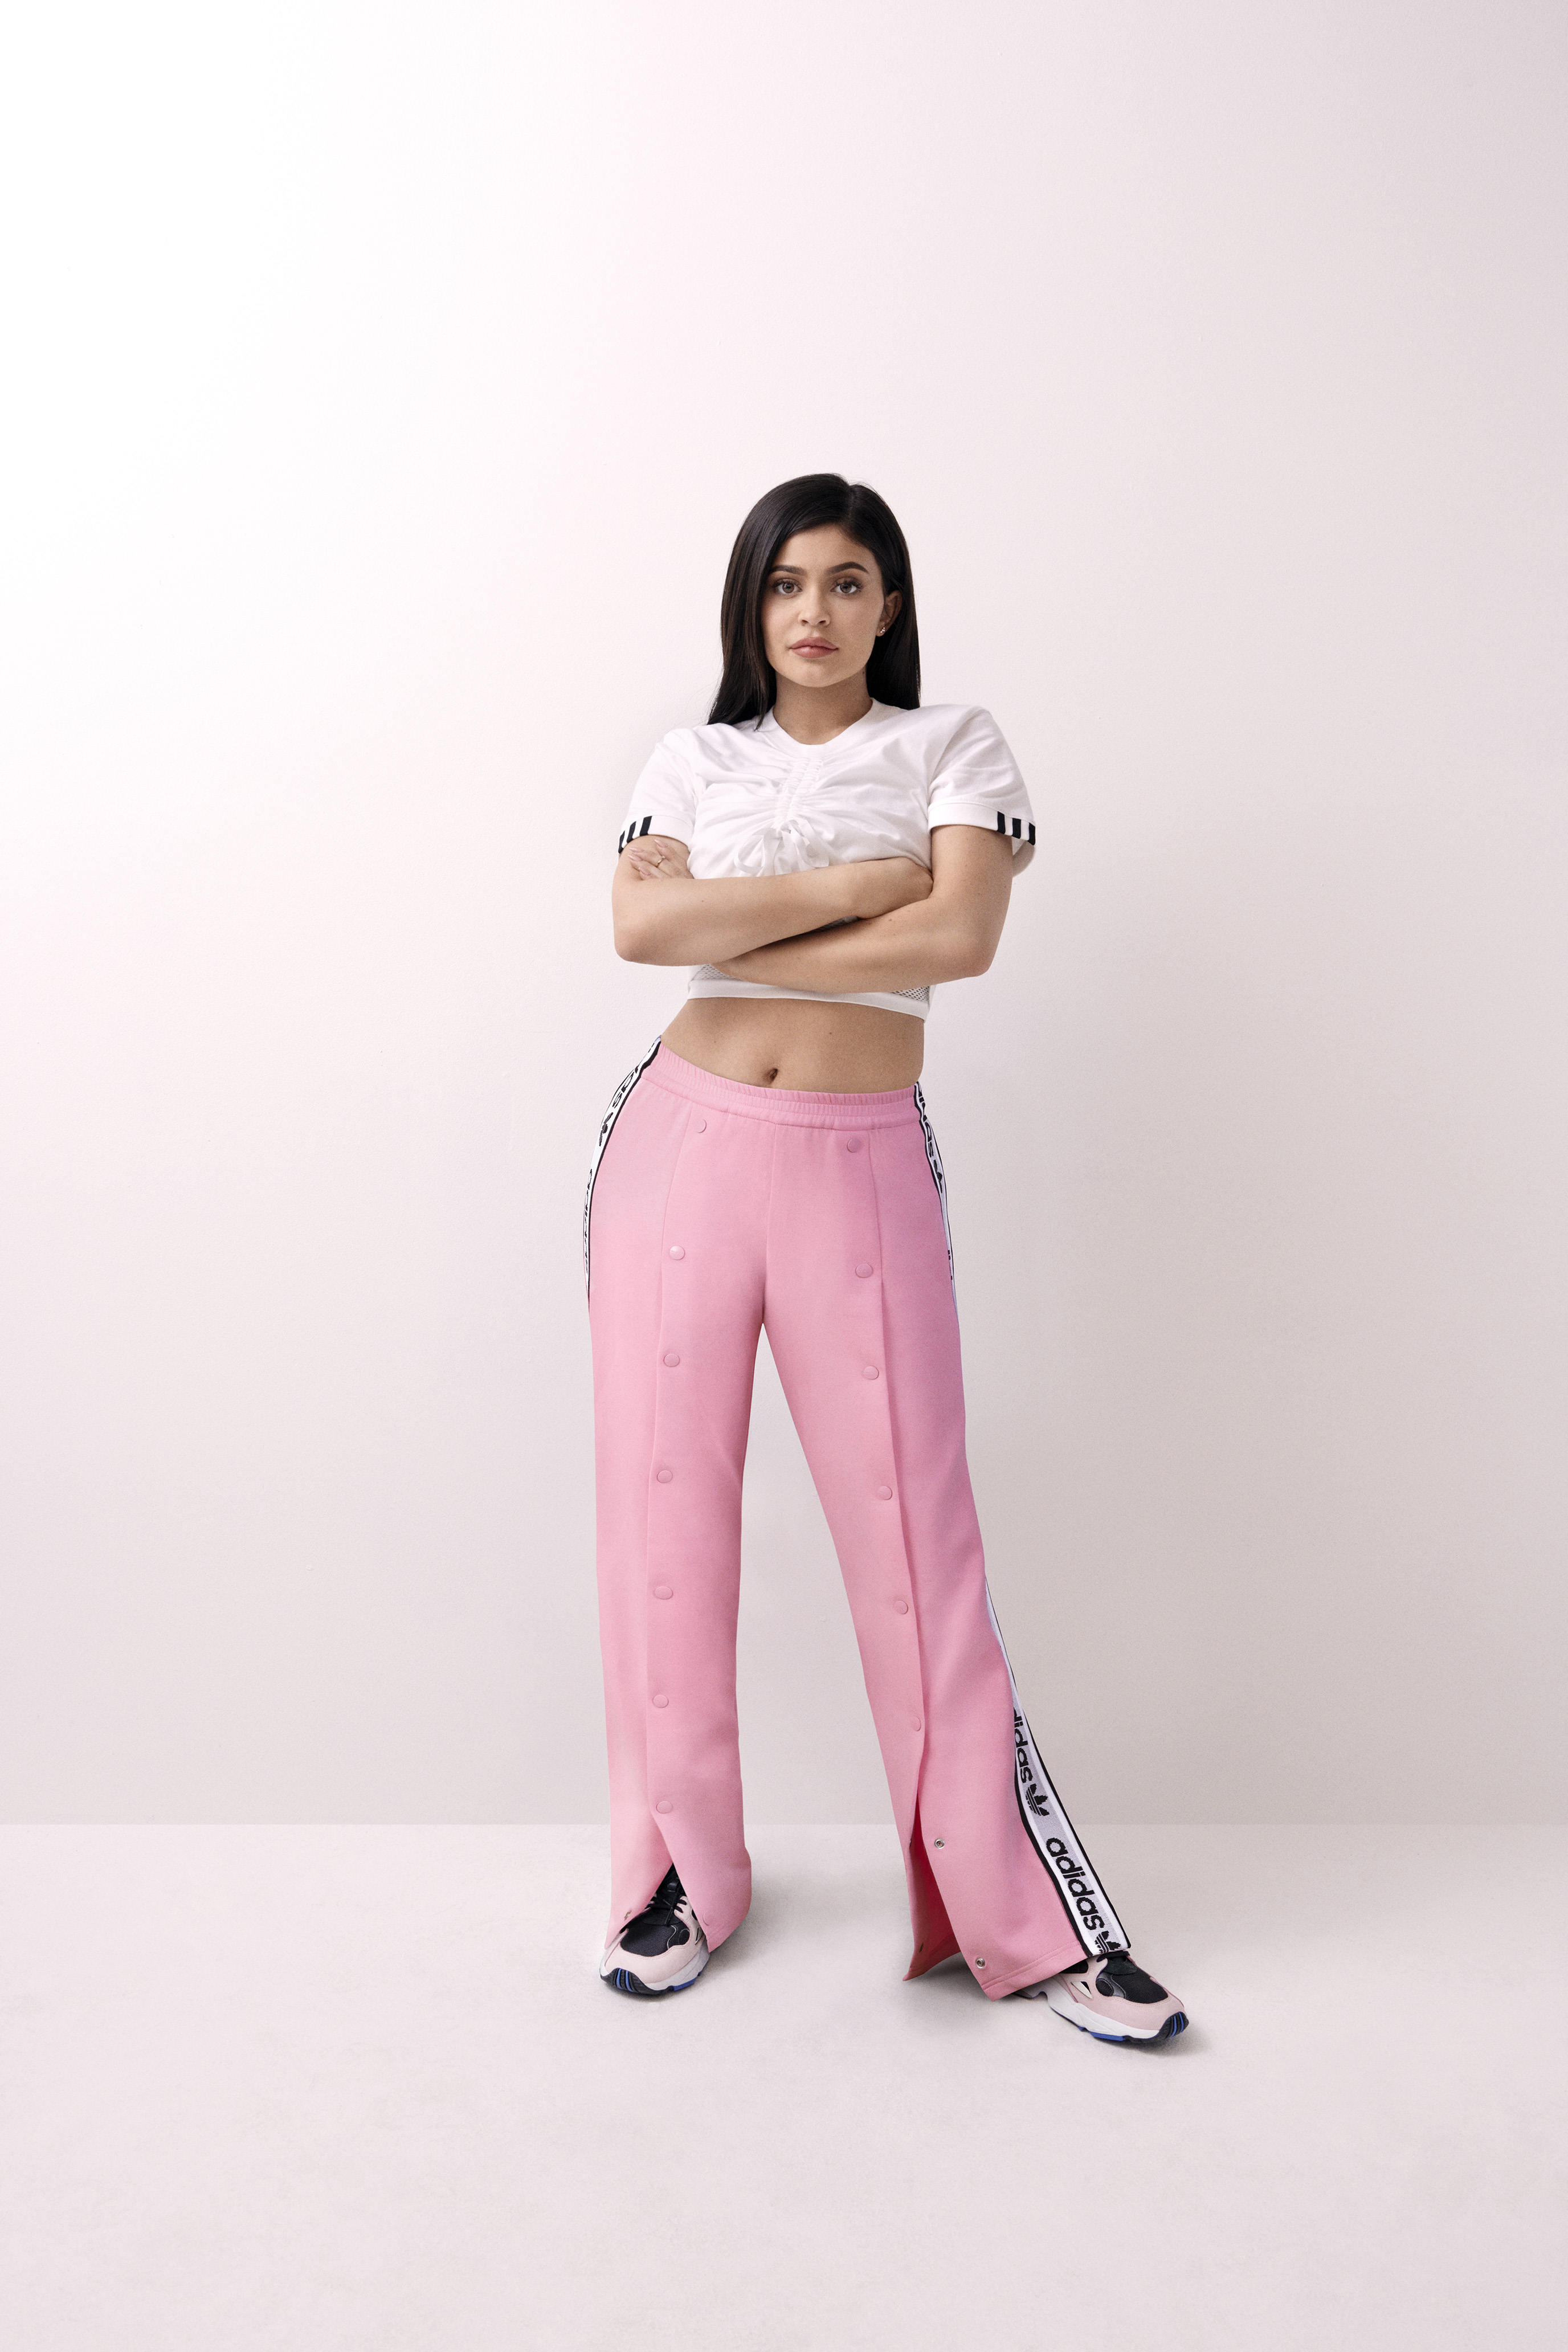 Kylie Jenner saca su lado en la nueva campaña para Adidas | Grazia